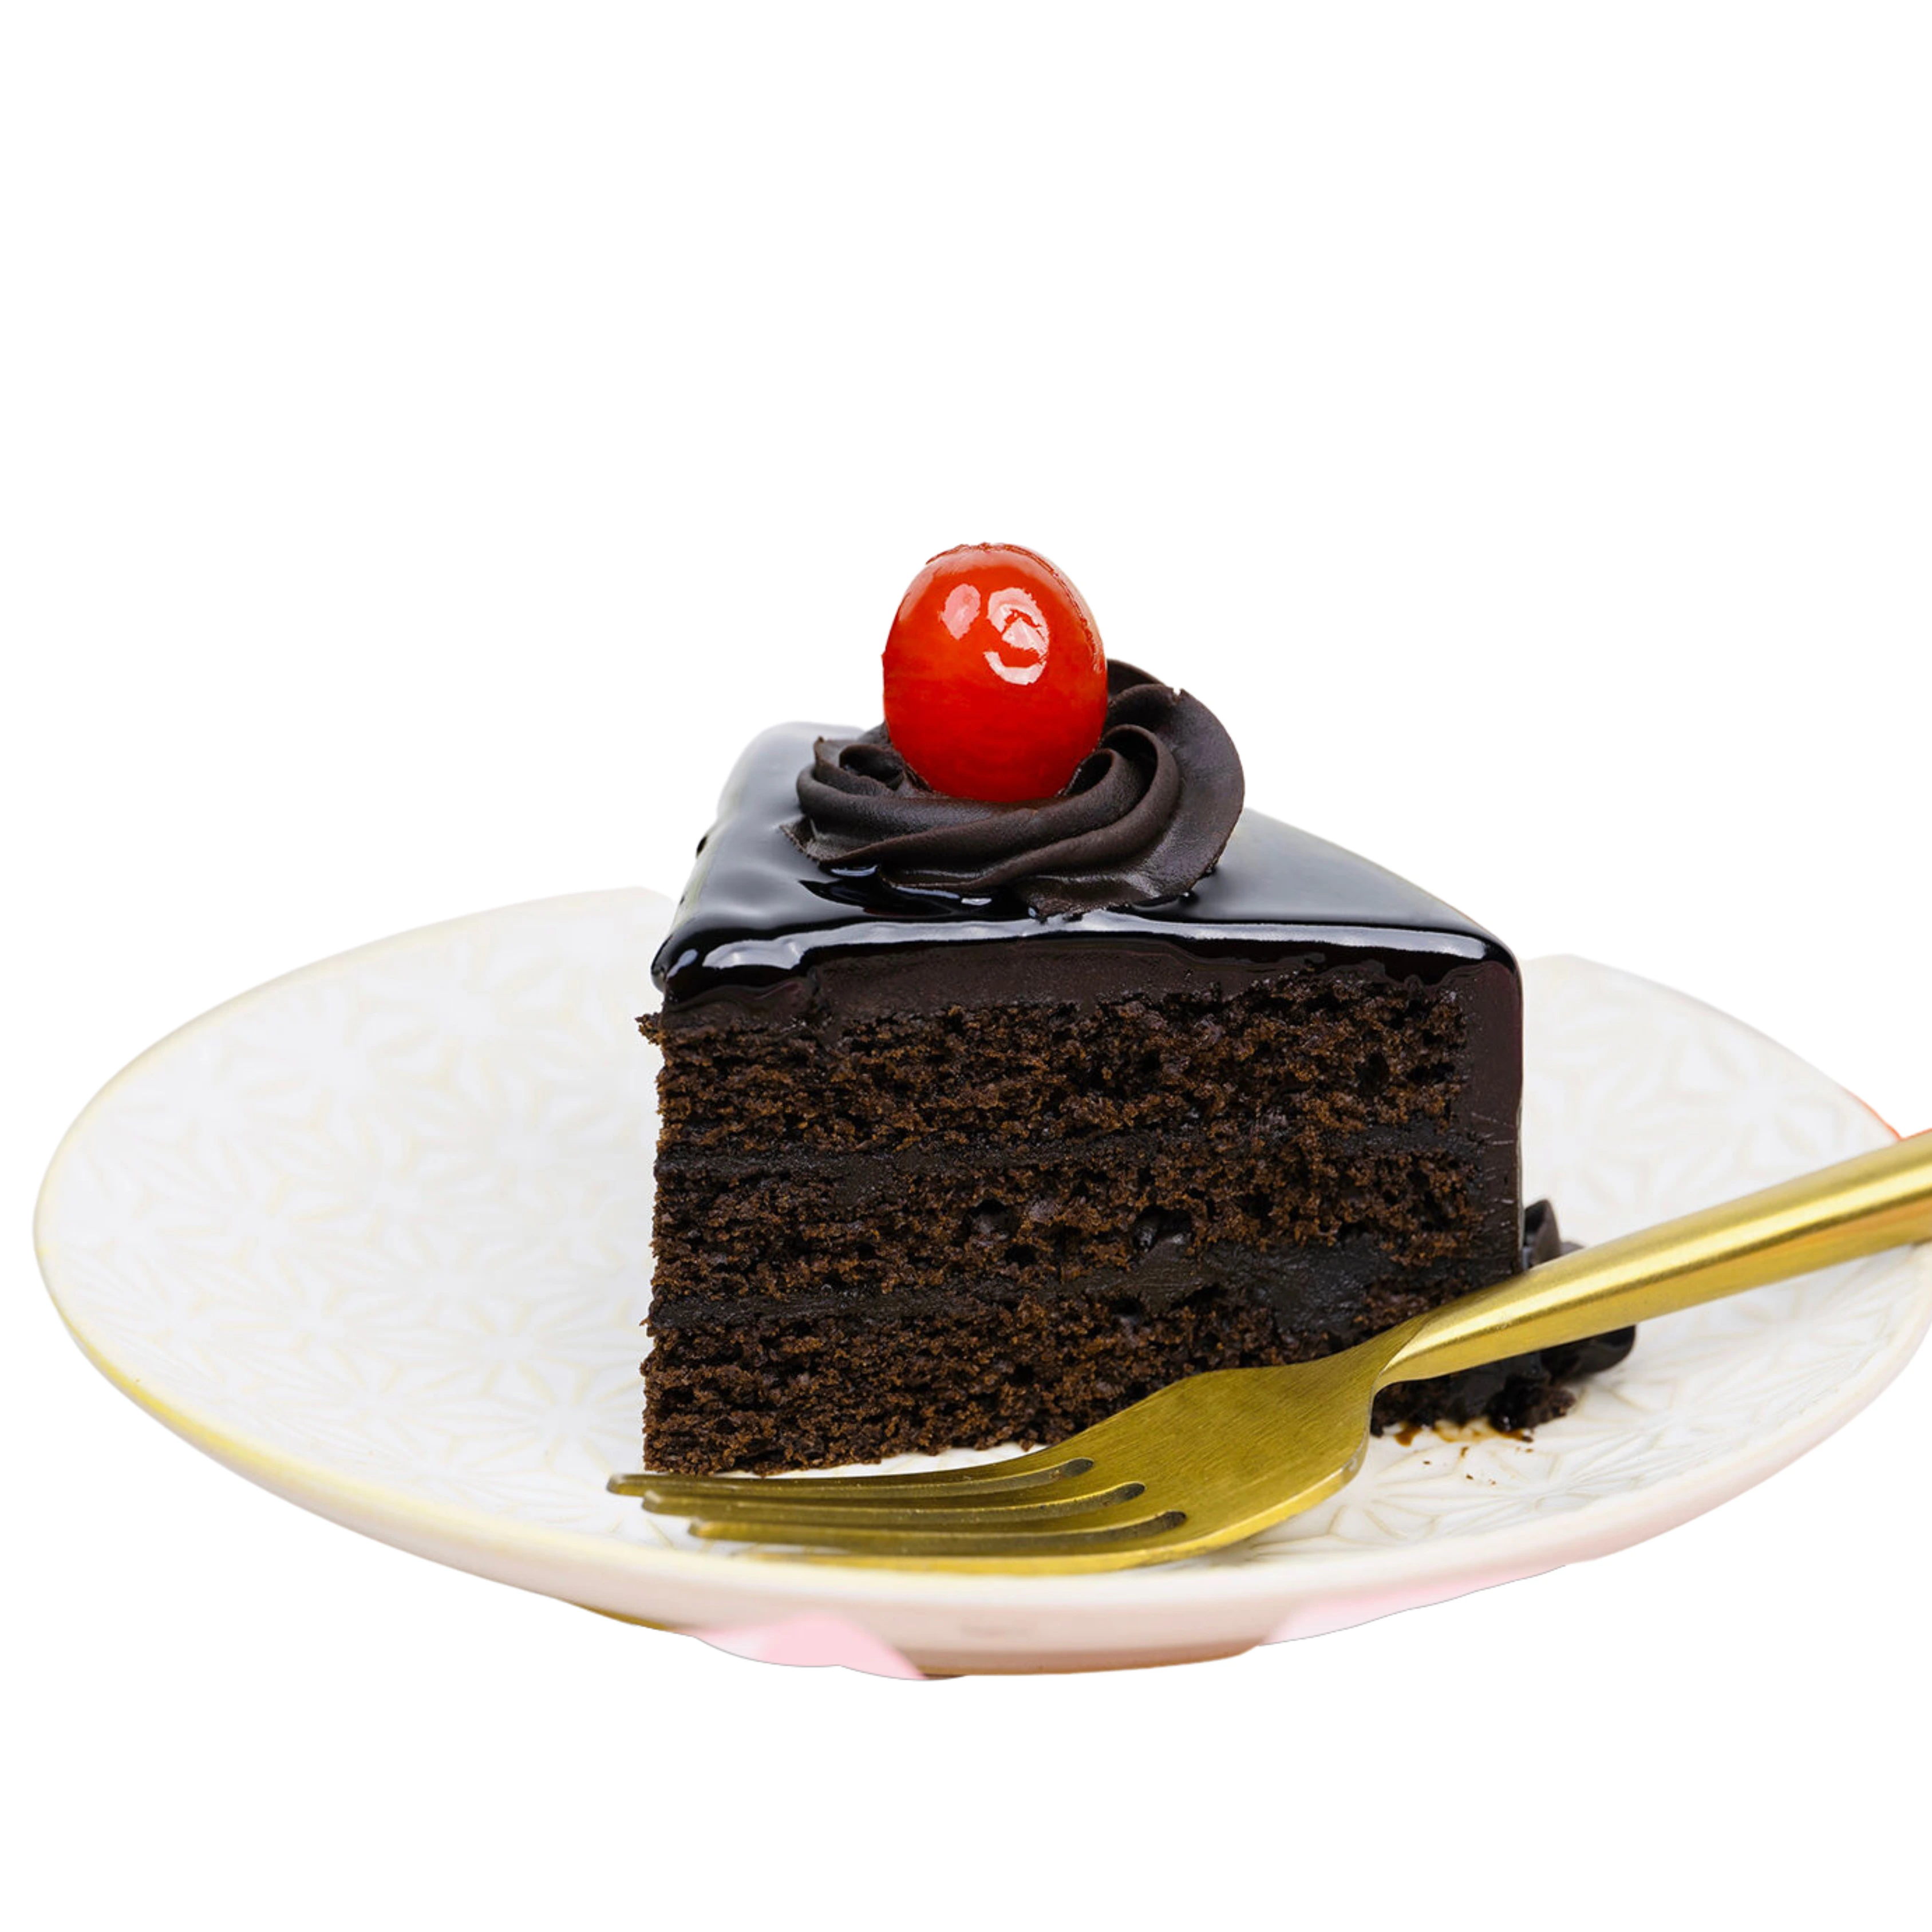 Decorated Chocolate Truffle Birthday Cake